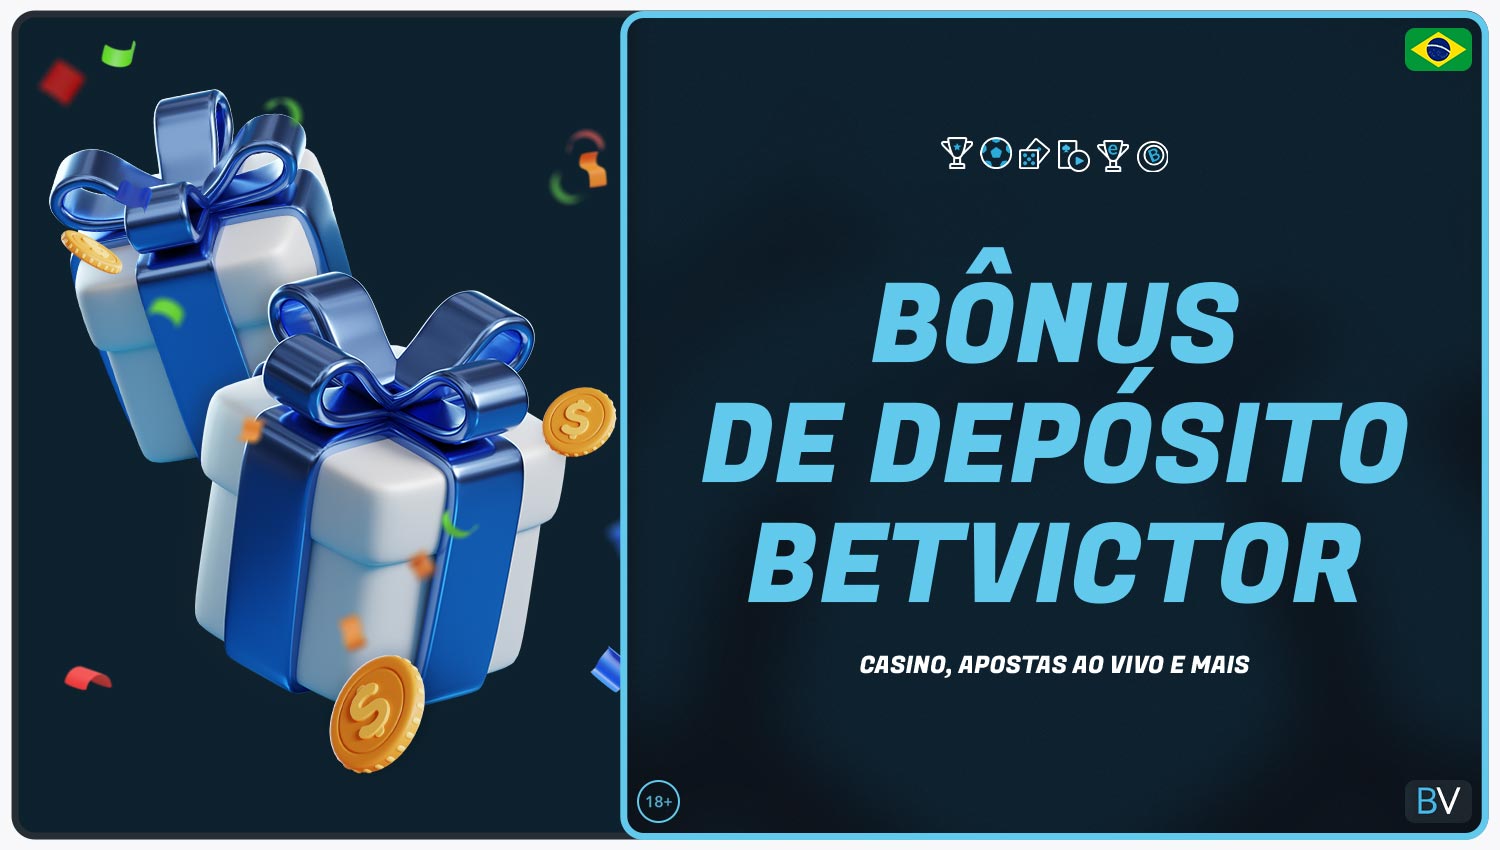 Revisão dos bônus disponíveis para jogadores do Brasil ao fazer um depósito na plataforma Betvictor.